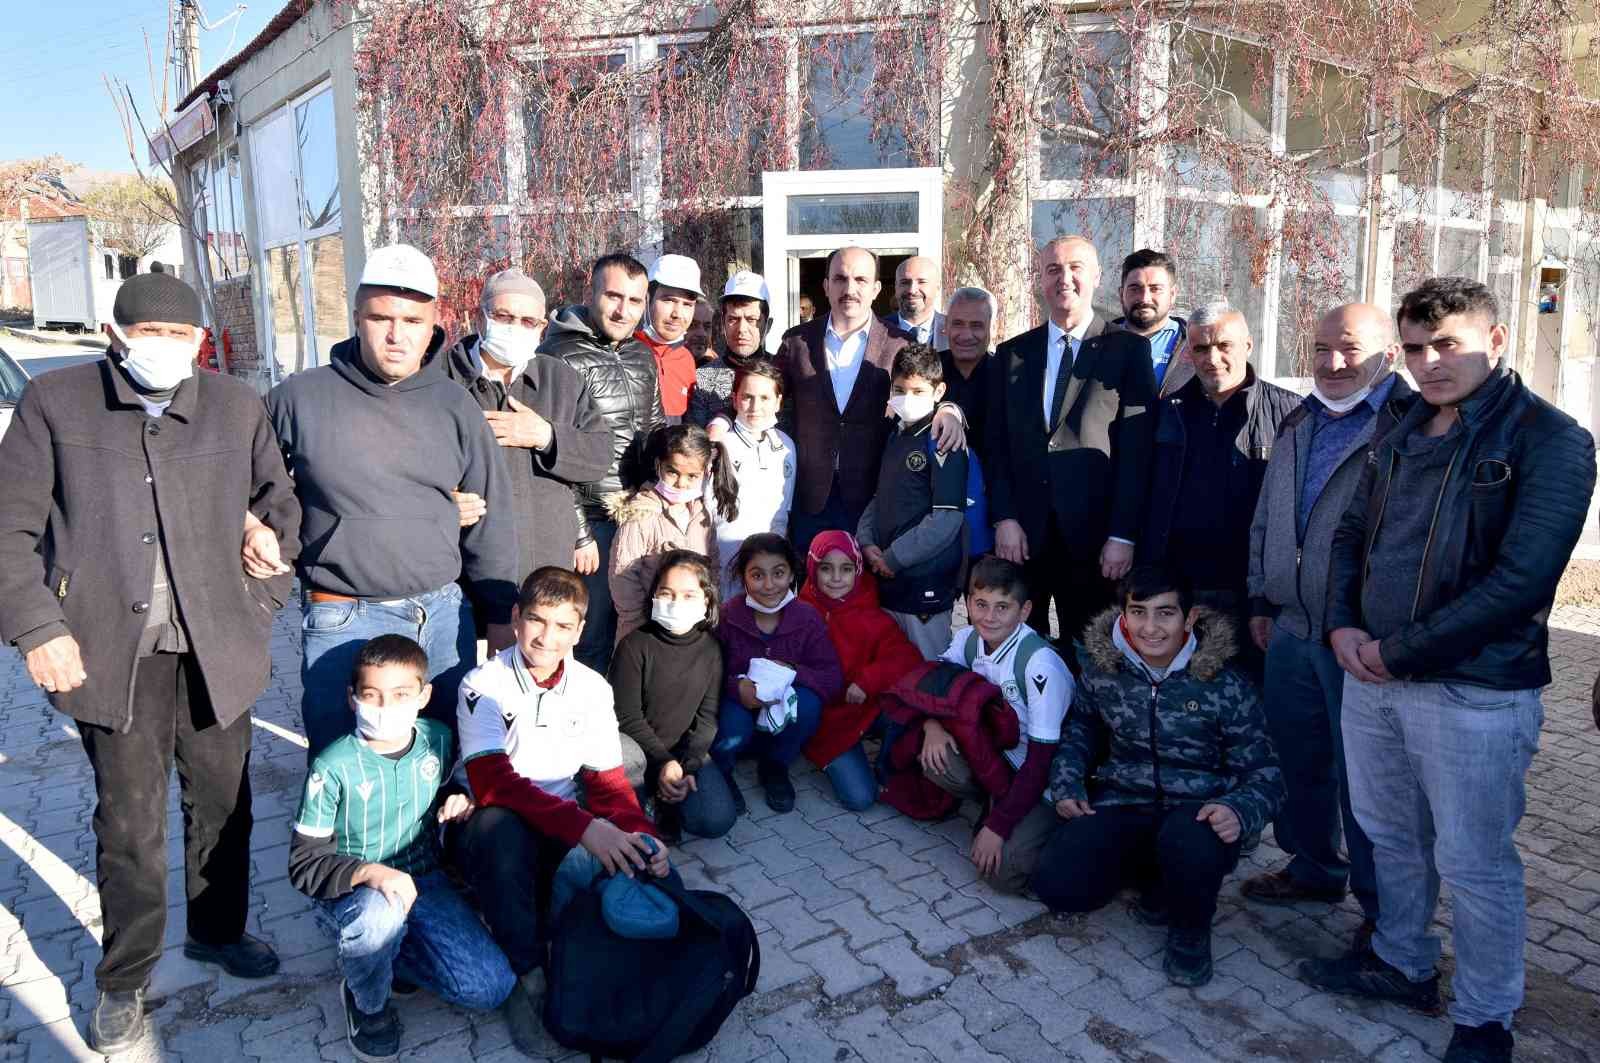 Başkan Altay Çeltik ve Yunak’ın mahallerinde vatandaşlarla buluştu